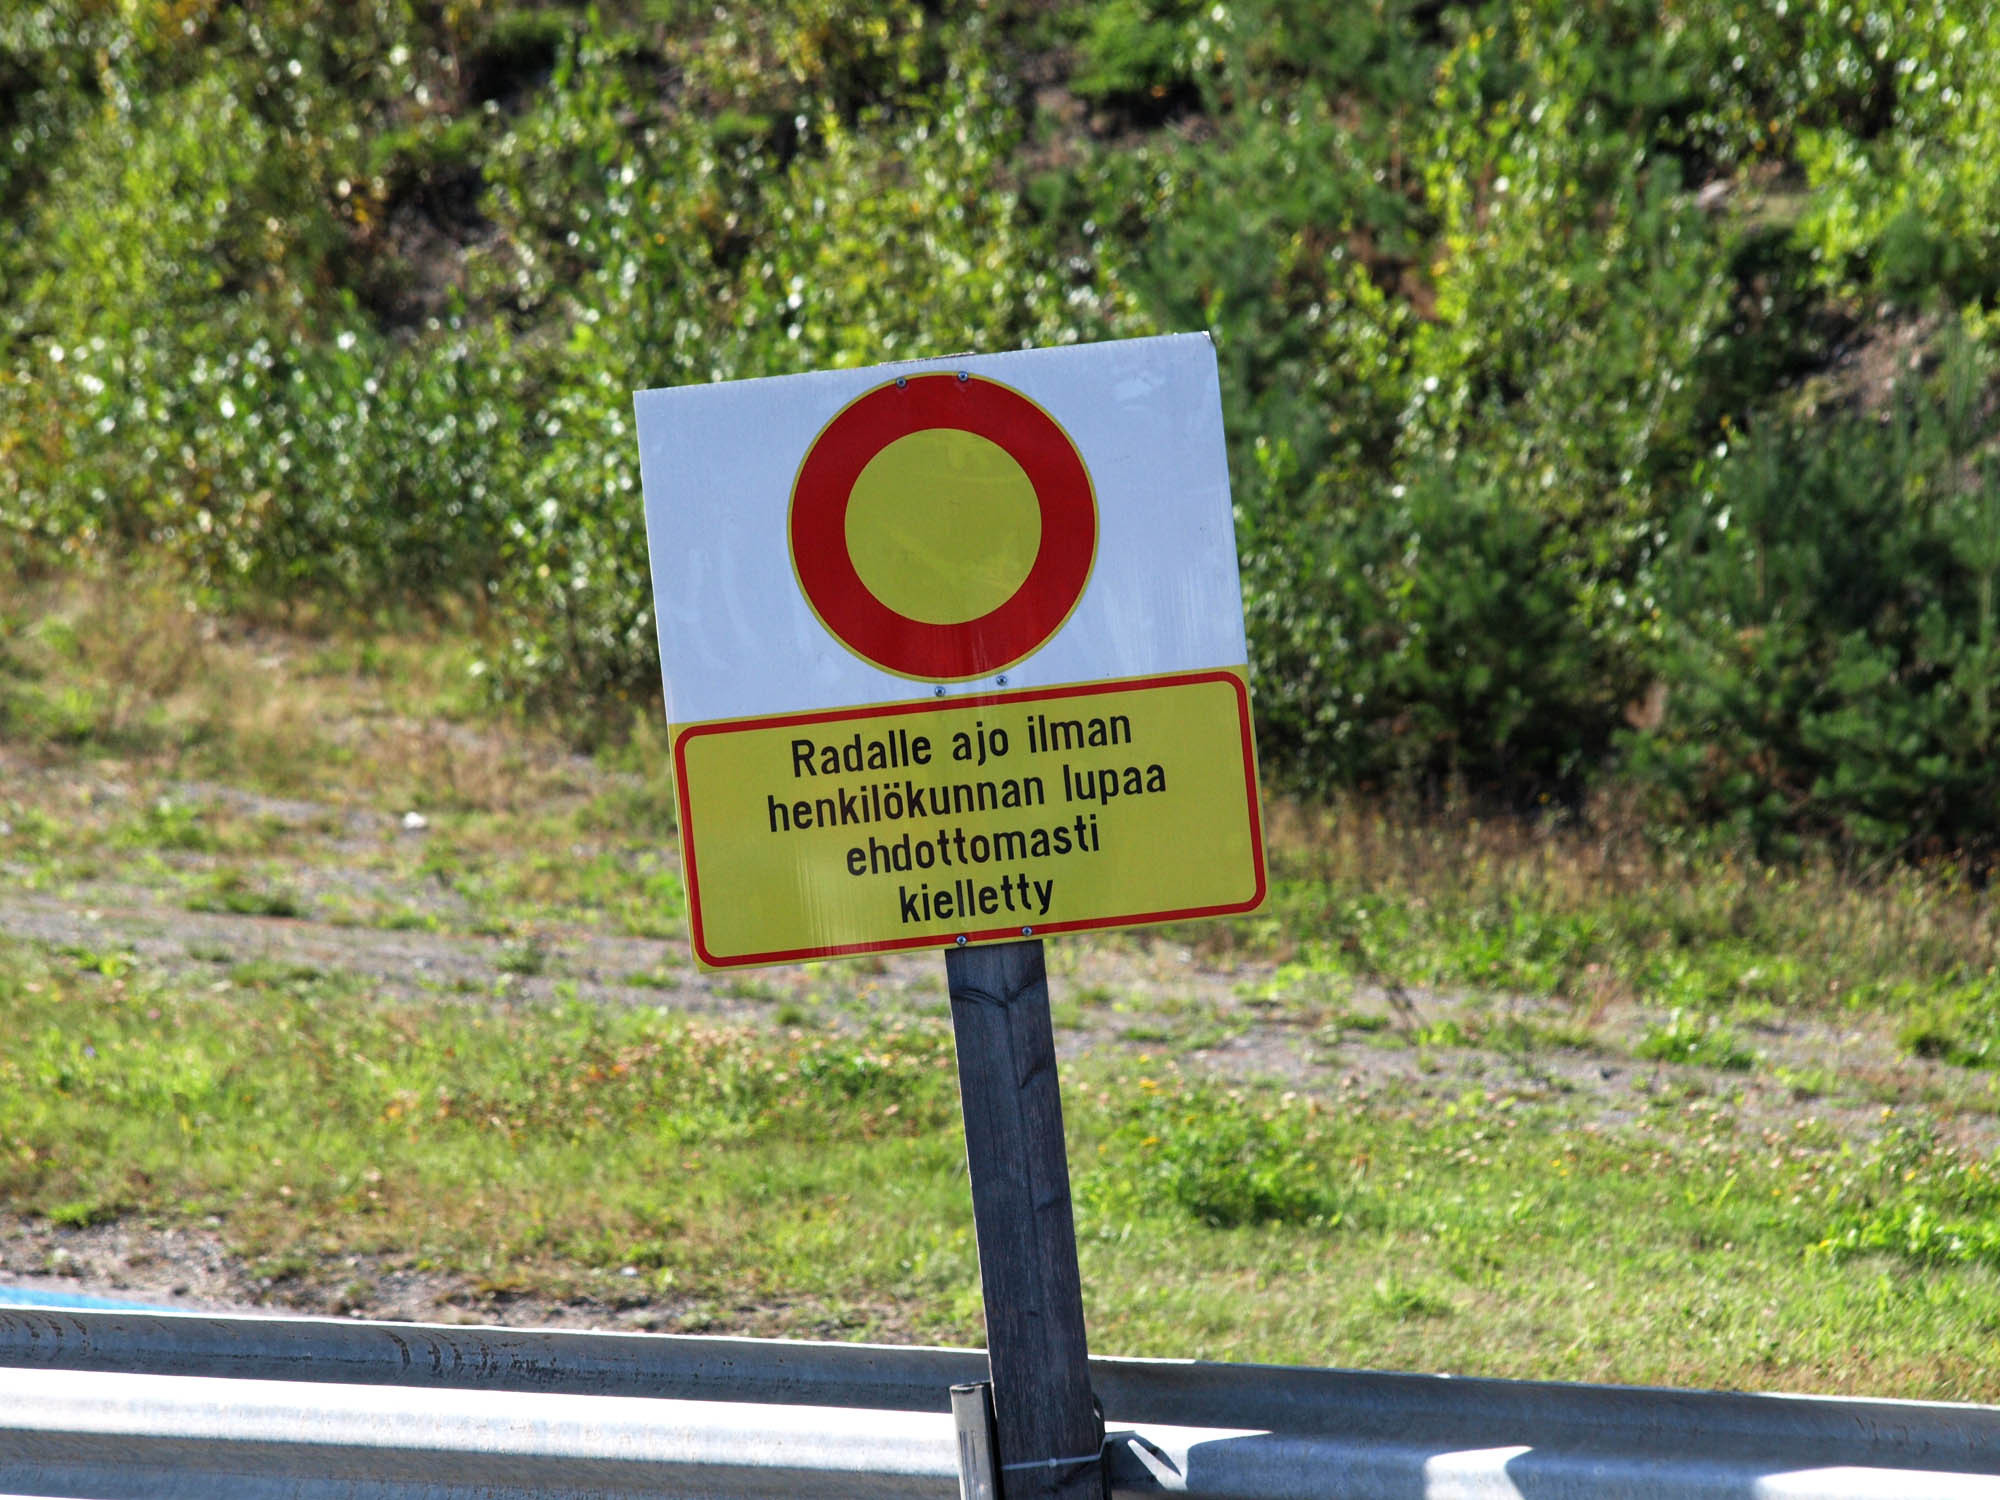 Fintoys ratapÃ¤ivÃ¤ 24.8.2013 Ahvenisto Race Circuit, Radalle ajo ilman henkilÃ¶kunnan lupaa ehdottomasti kielletty